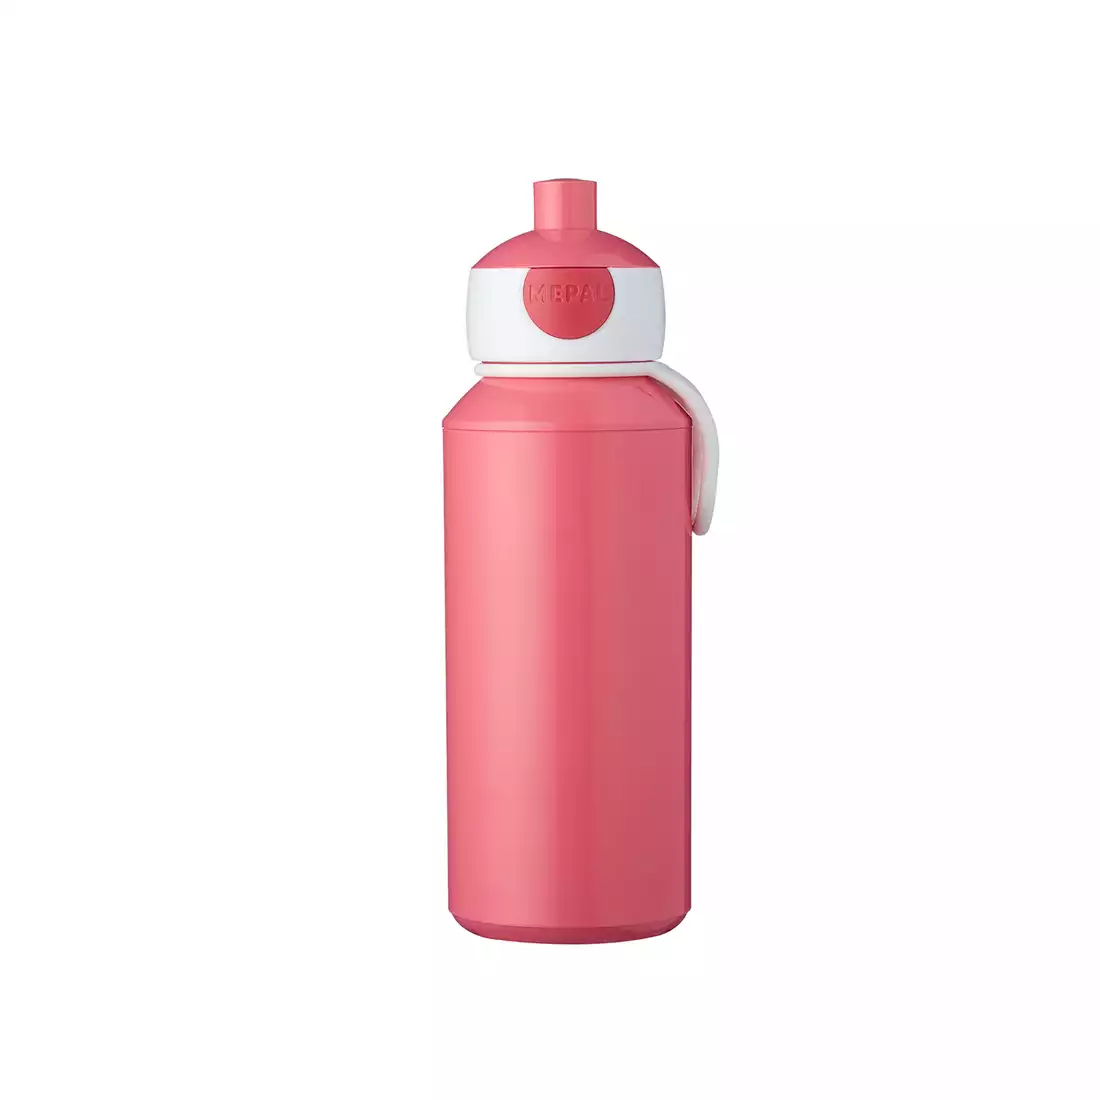 MEPAL POP-UP CAMPUS water bottle for children 400 ml pink